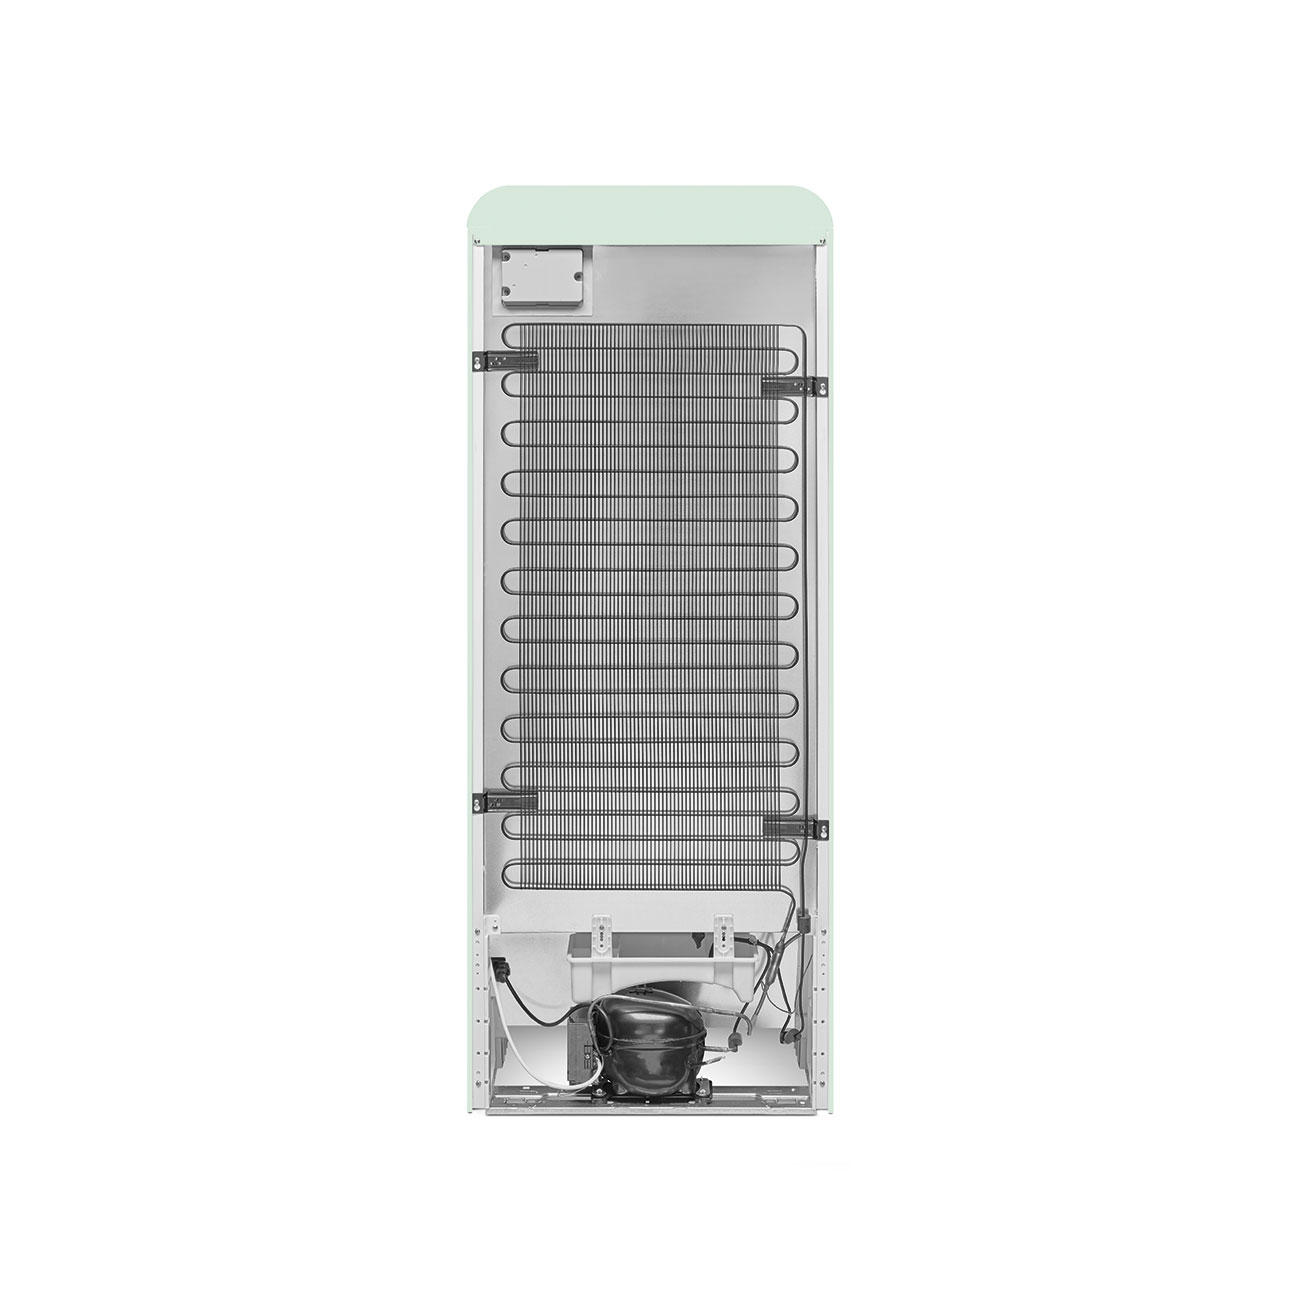 Pastellgrün Retro-Kühlschränke von Smeg_2